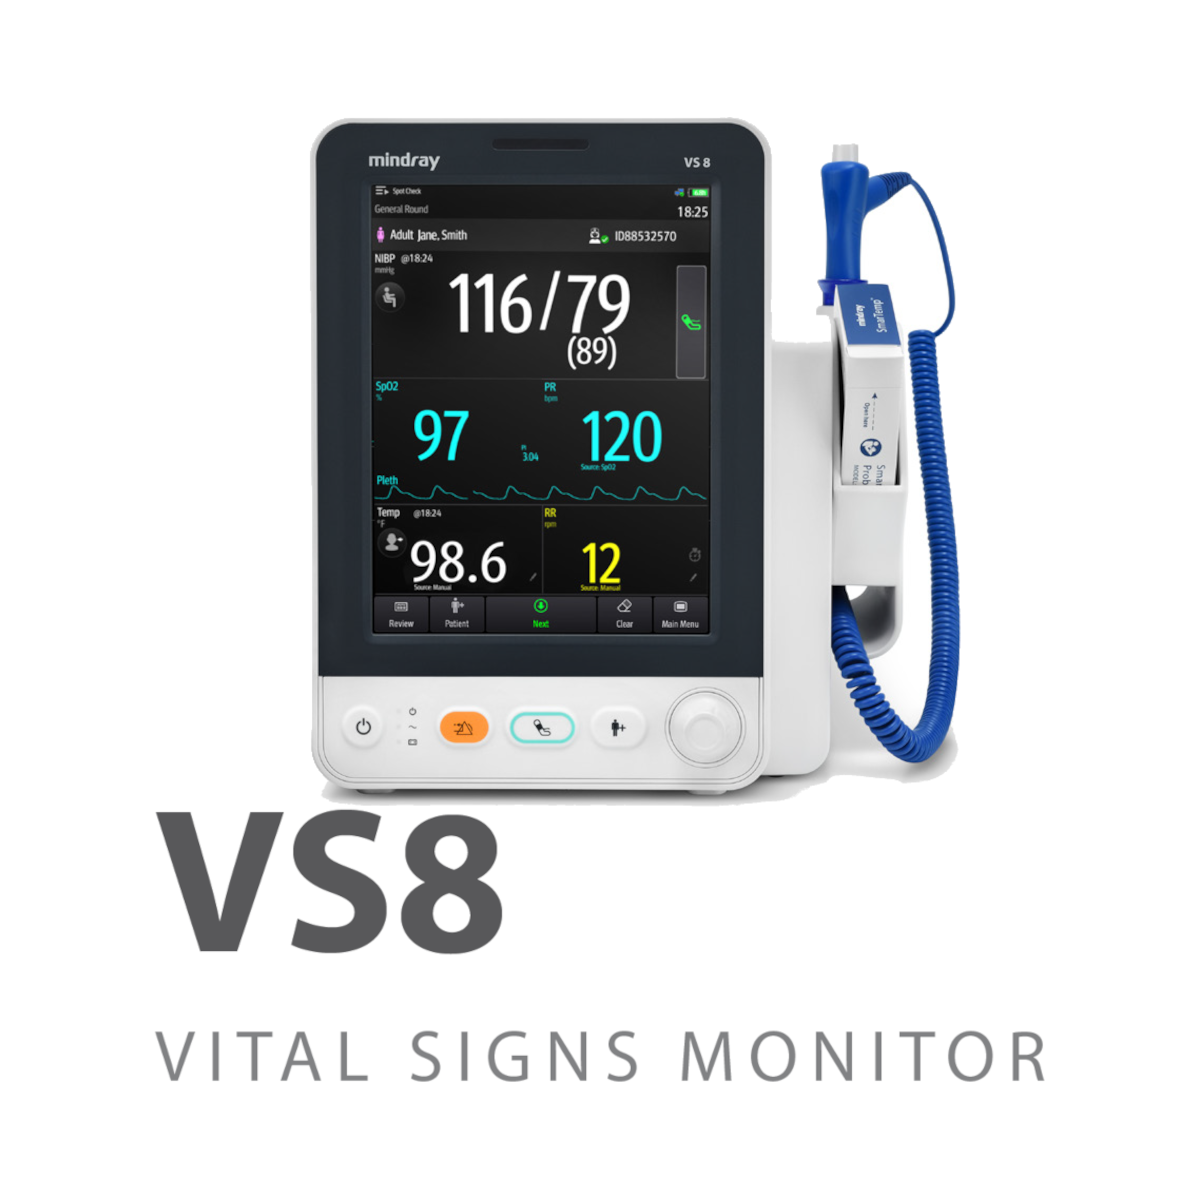 Mindray Medical Equipment: VS8 Vital Signs Monitor